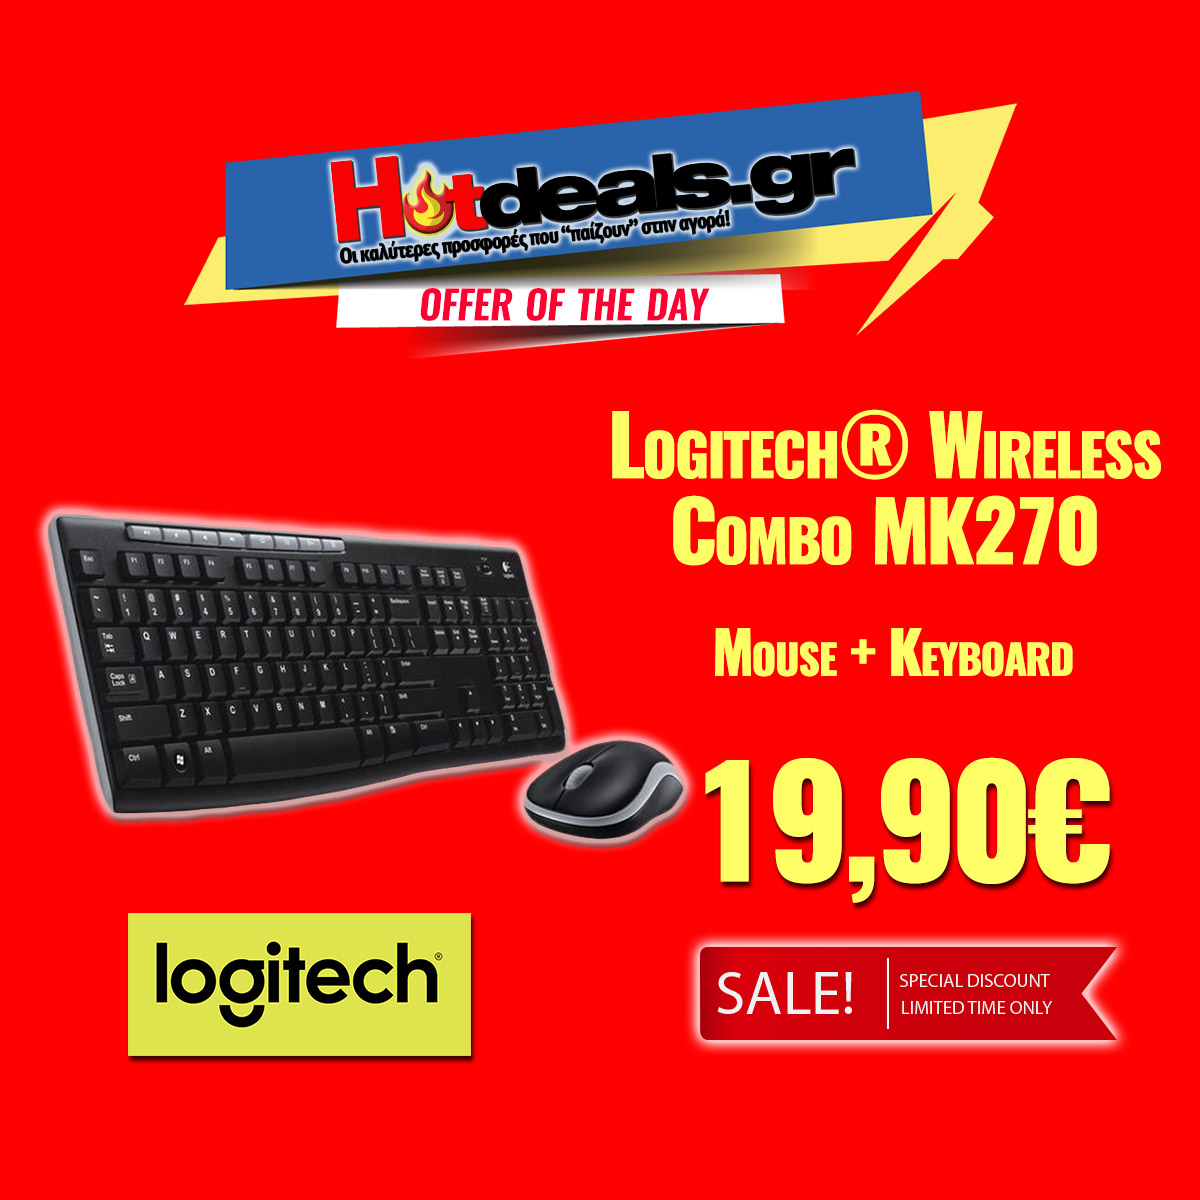 Logitech-Wireless-Combo-MK270-WRLS-Keyboard-Mouse-hotdealsgr